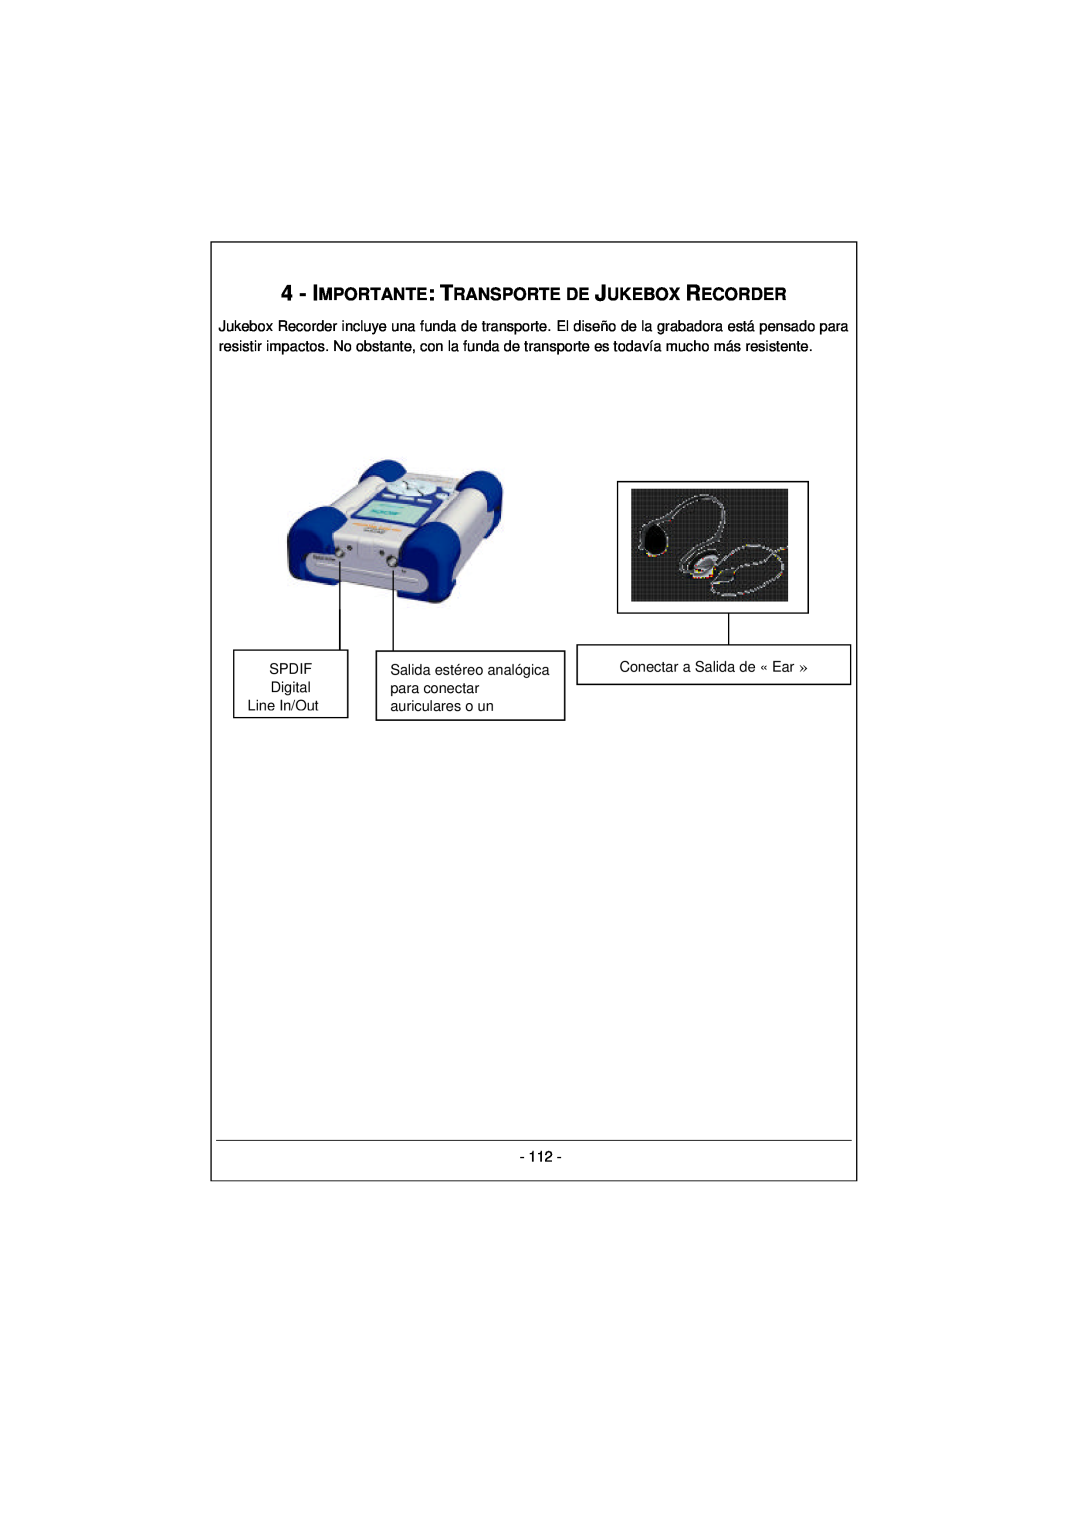 Archos 100628 manual Importante: Transporte De Jukebox Recorder, SPDIF Digital Line In/Out, Conectar a Salida de « Ear » 